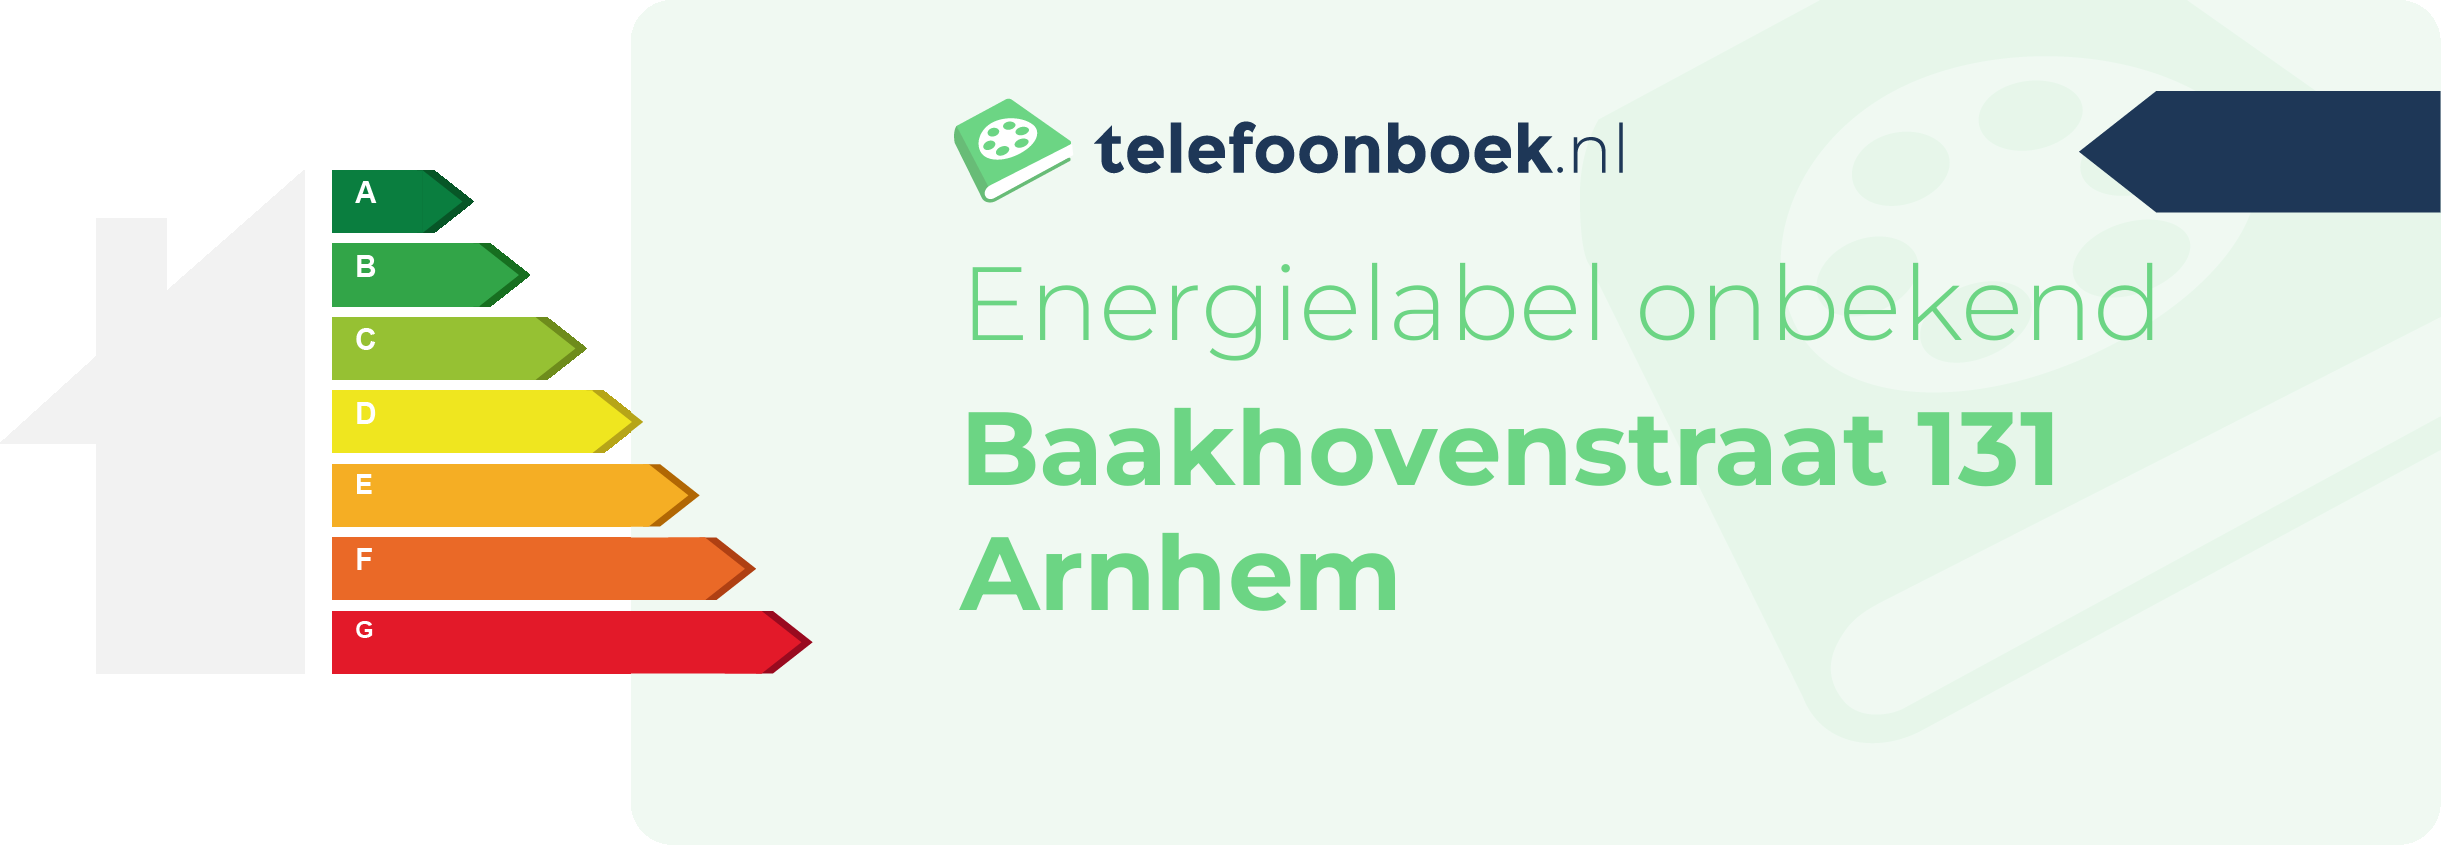 Energielabel Baakhovenstraat 131 Arnhem